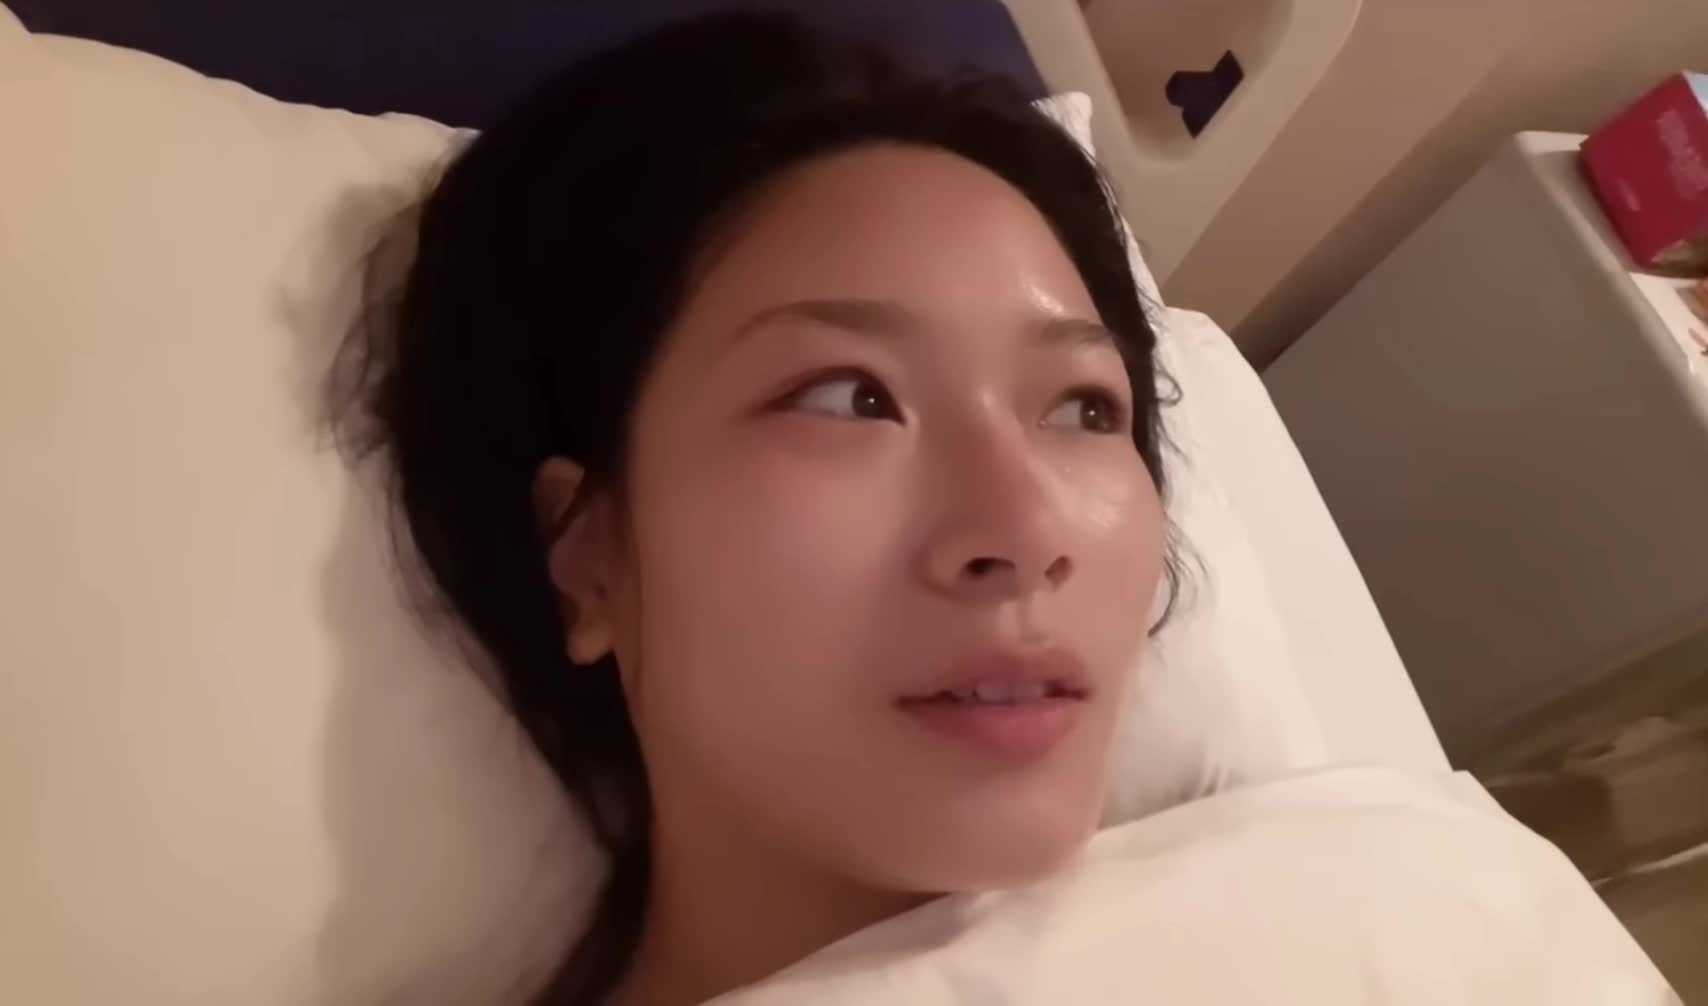 Nữ YouTuber Thạch Trang công khai phẫu thuật thẩm mỹ vòng 1 - Ảnh 3.